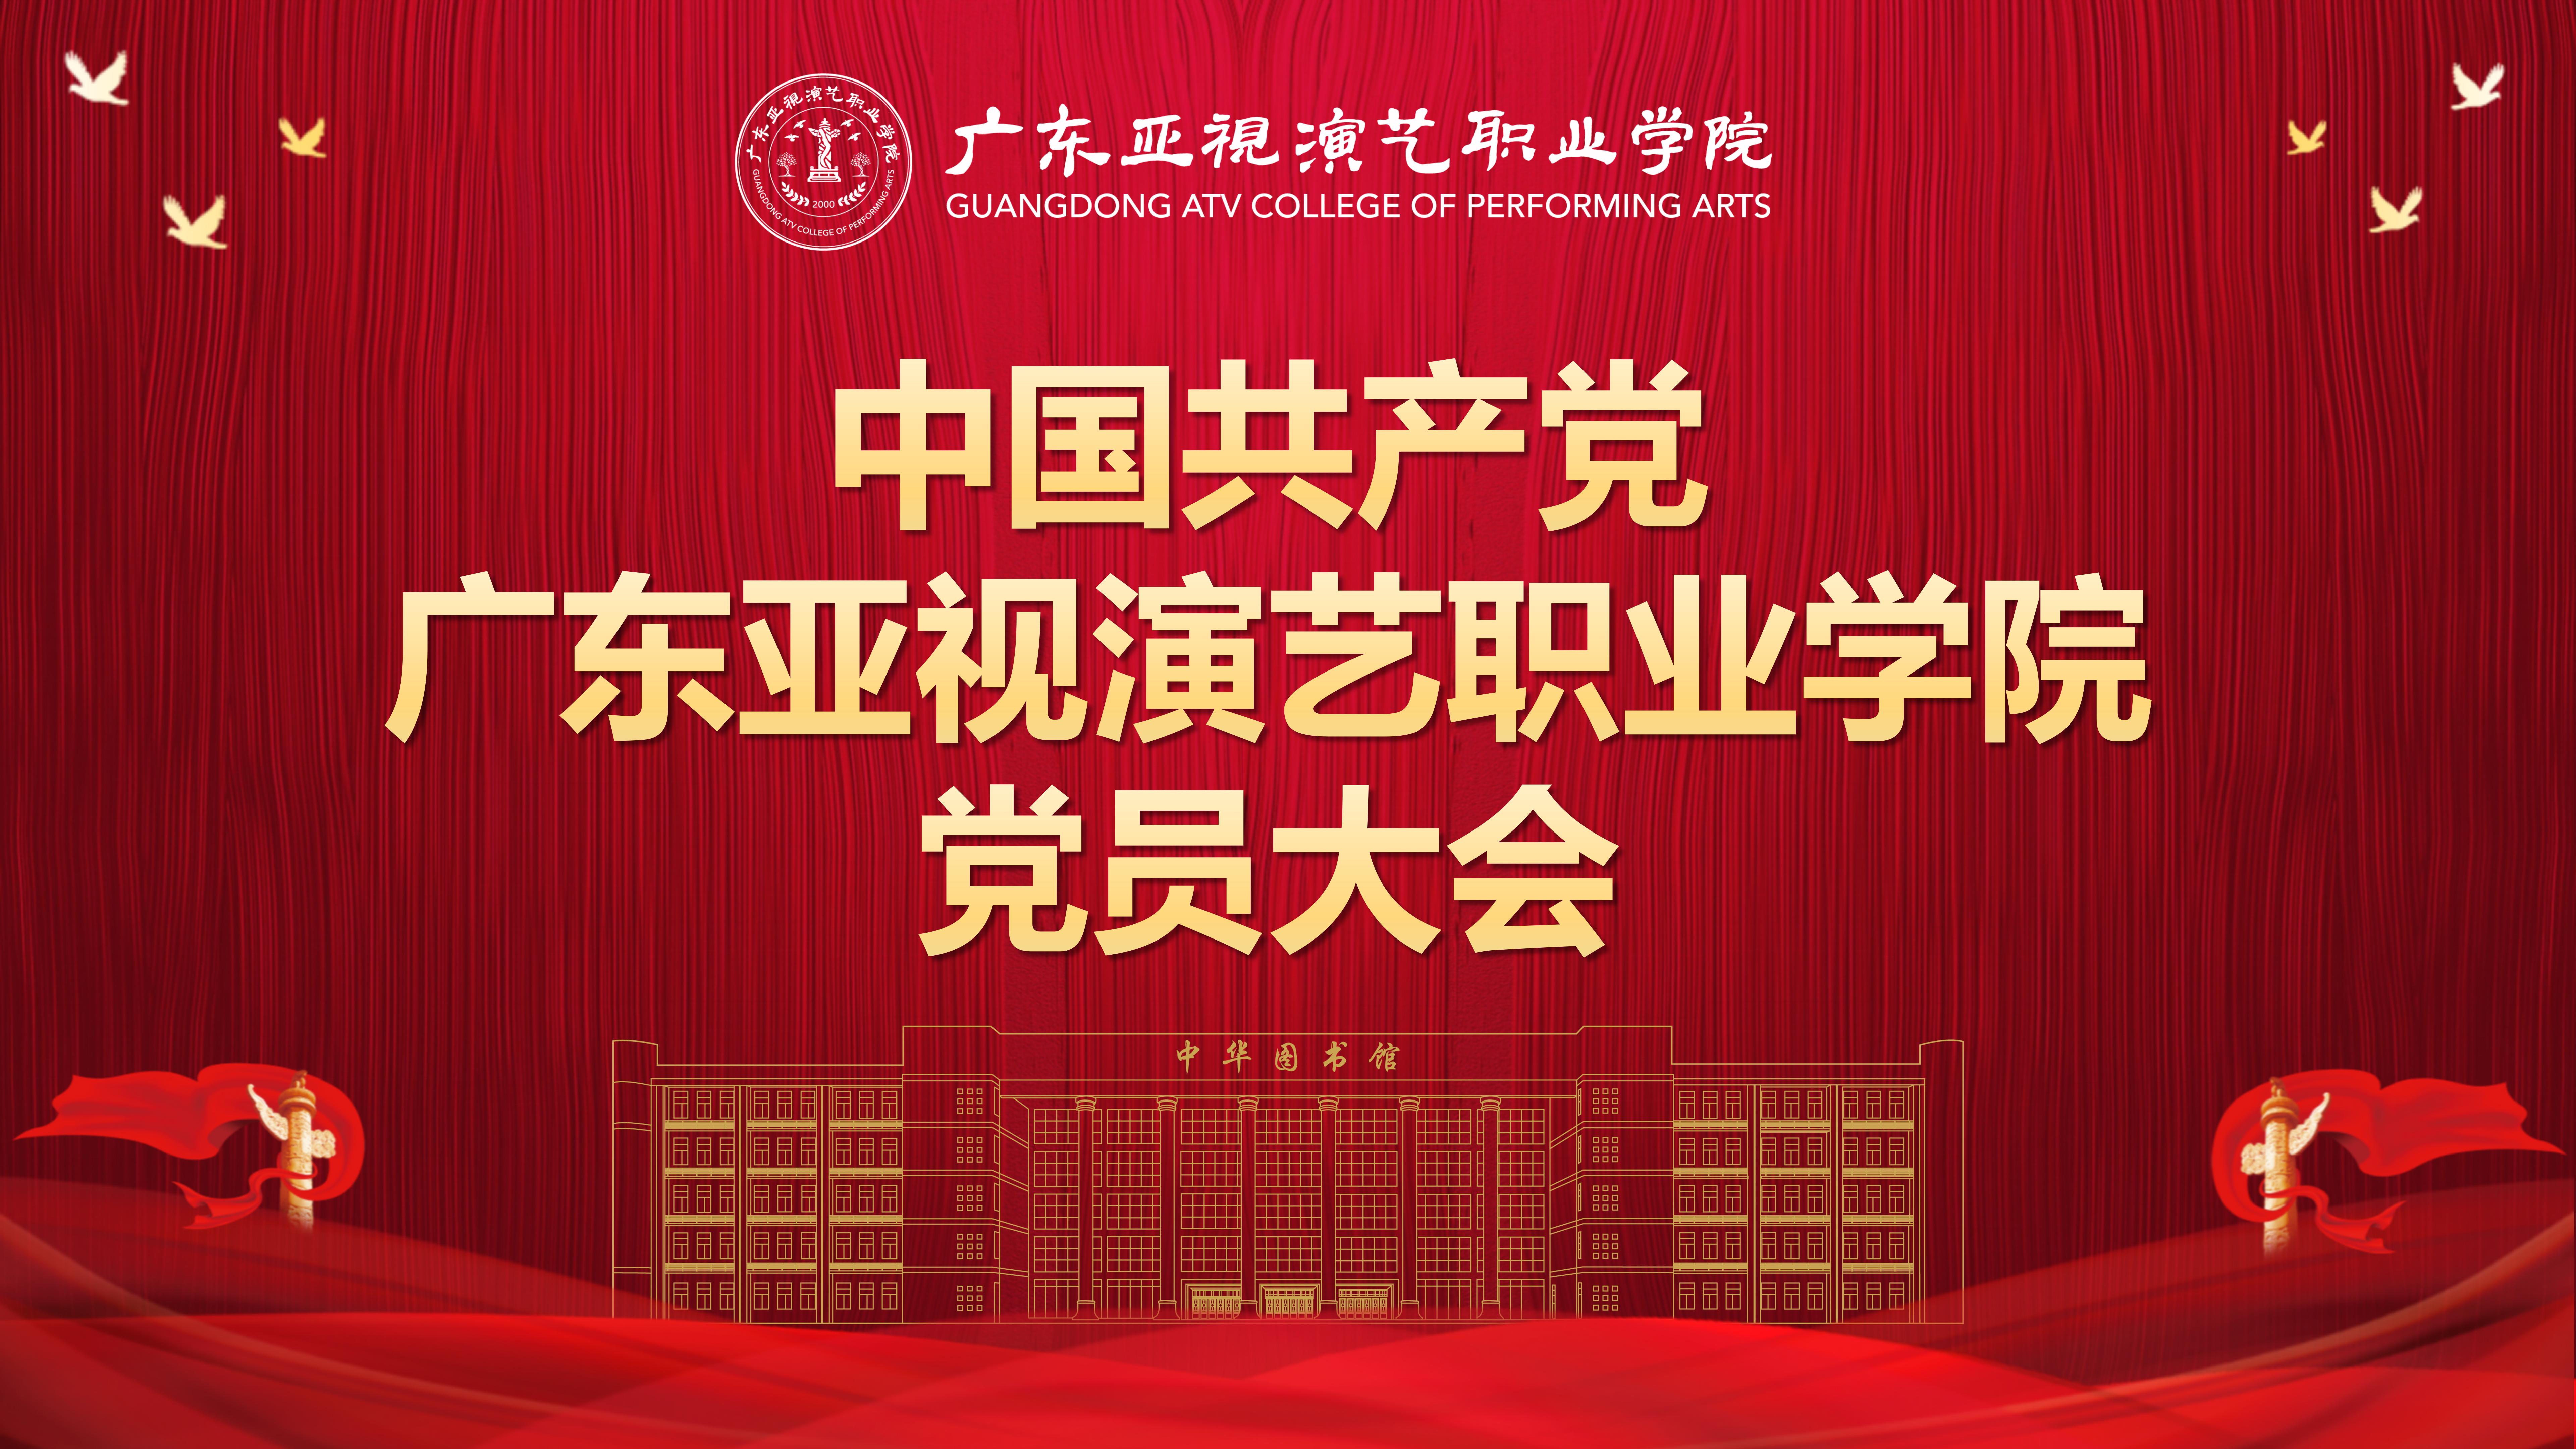 中国共产党广东亚视演艺职业学院党员大会胜利召开